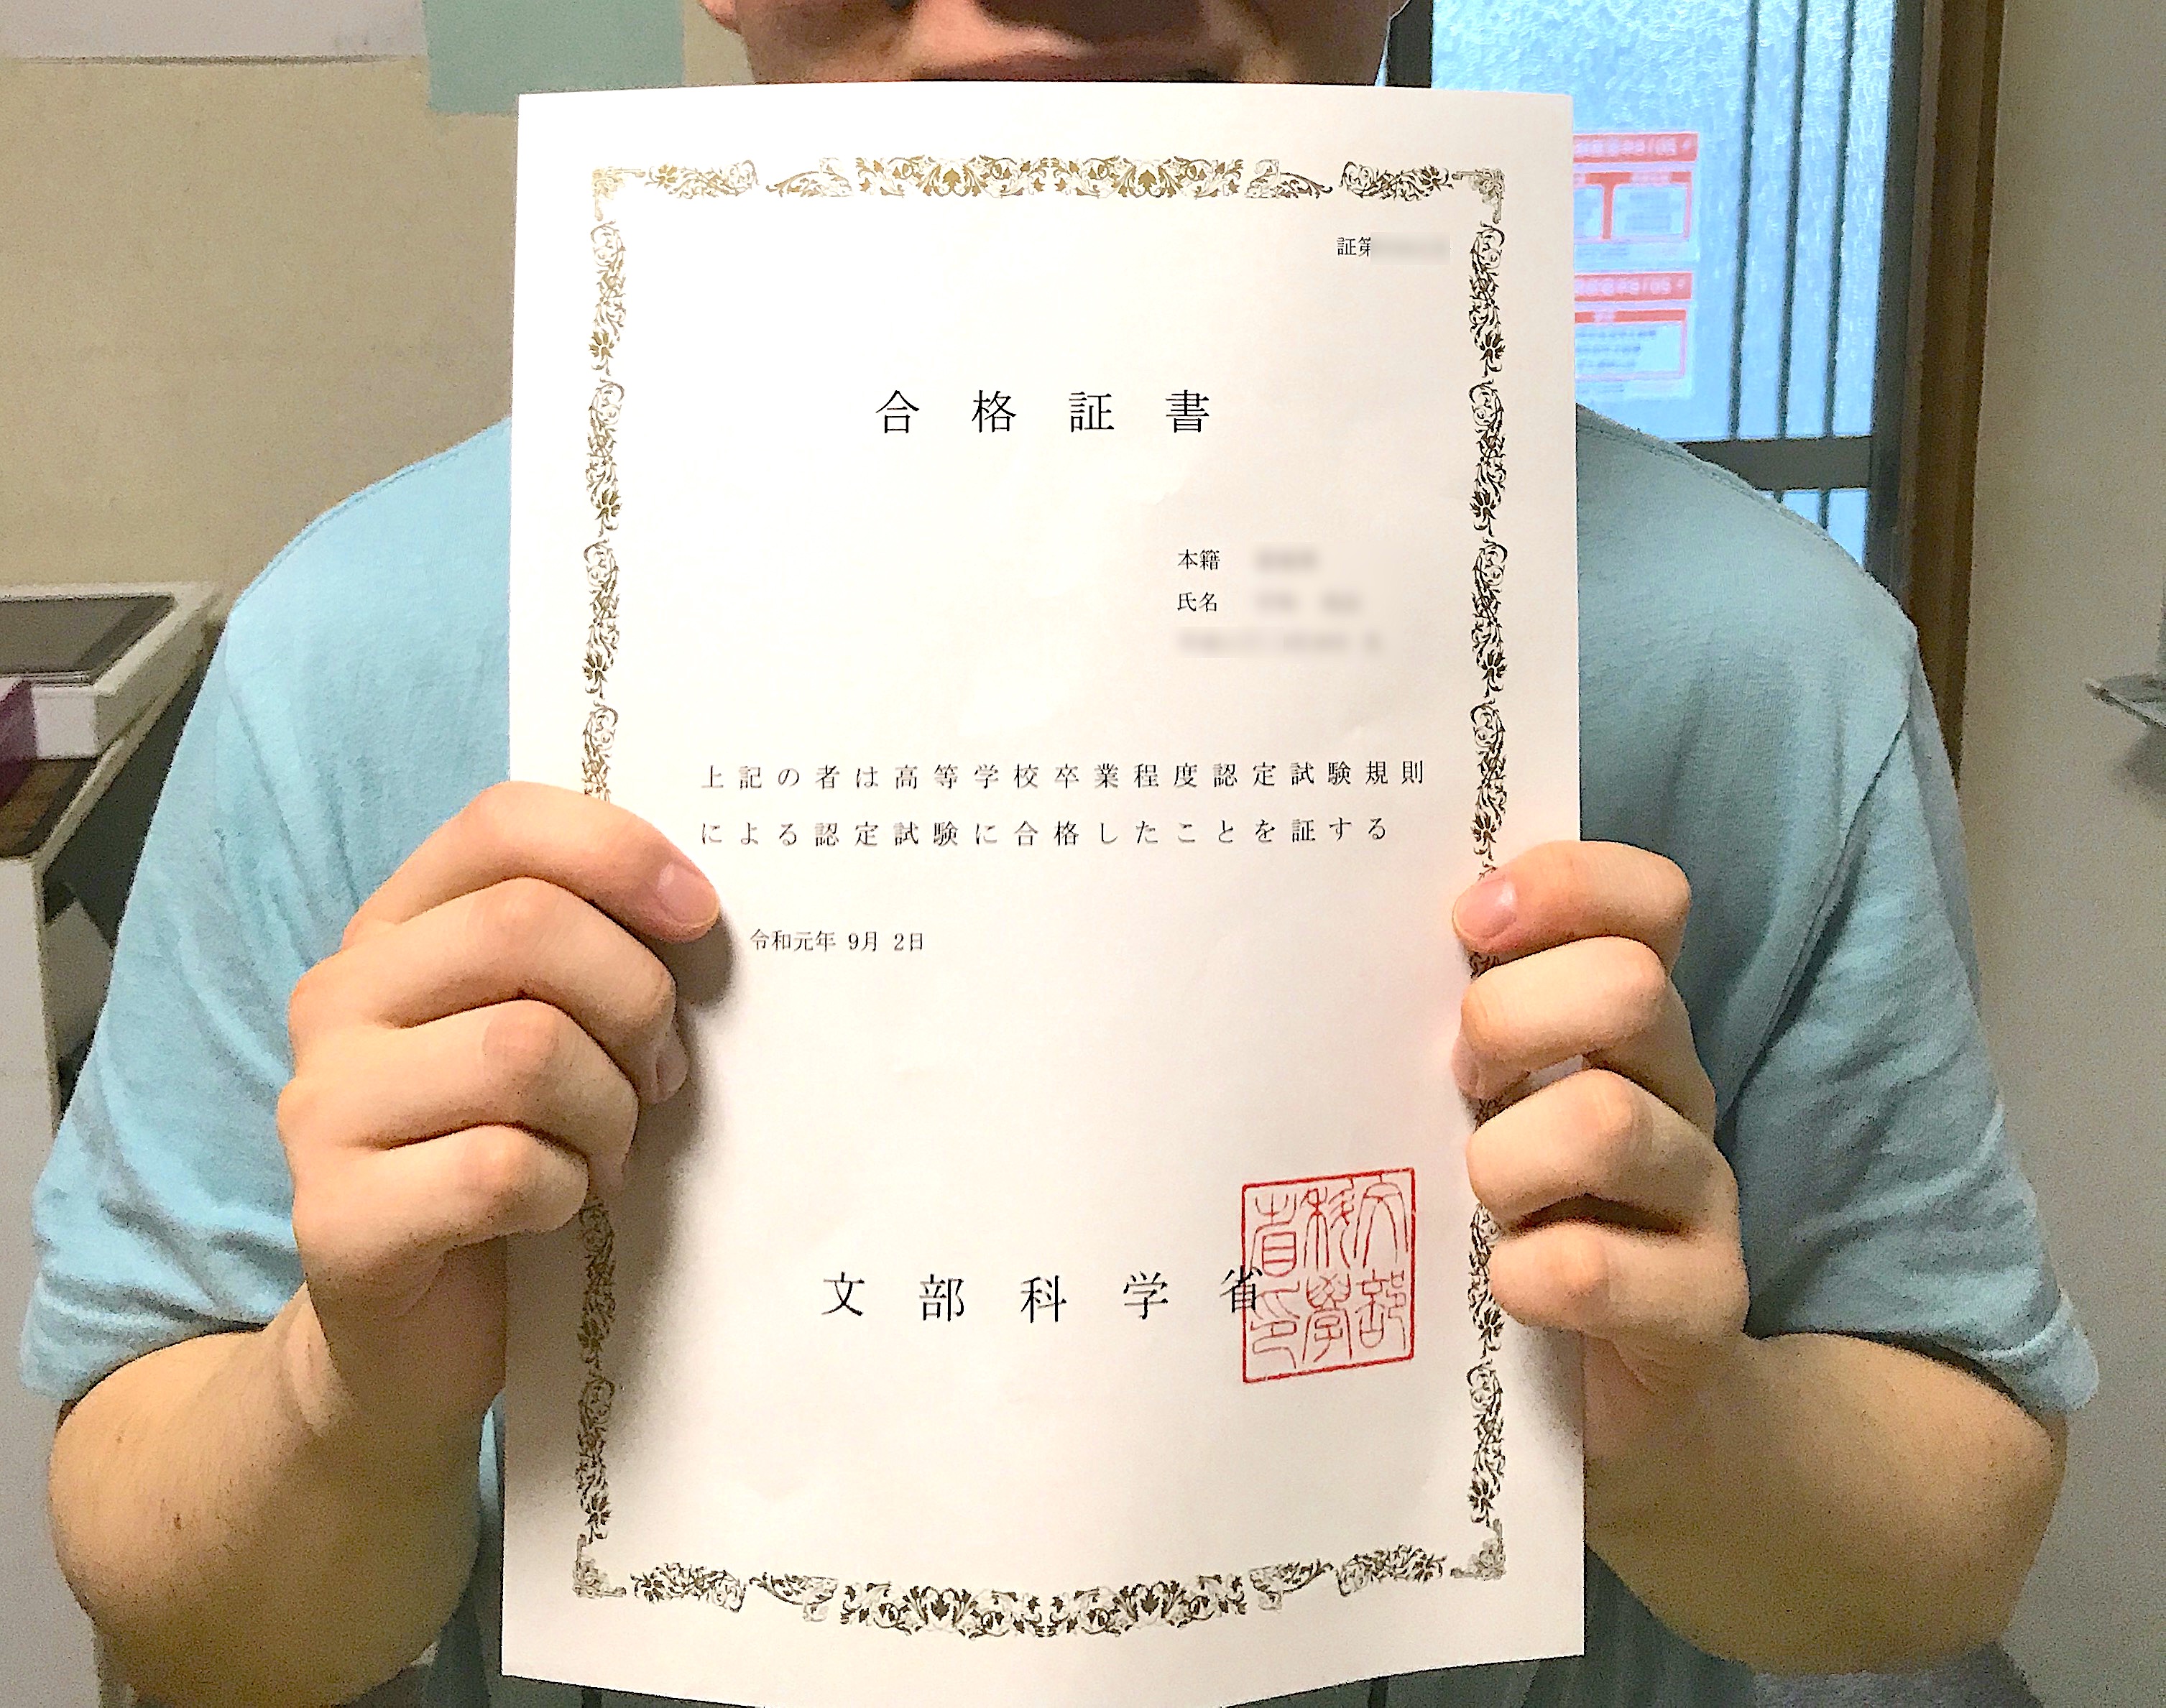 松山市にある学習塾ファタリタの高卒認定試験合格証書を持った写真